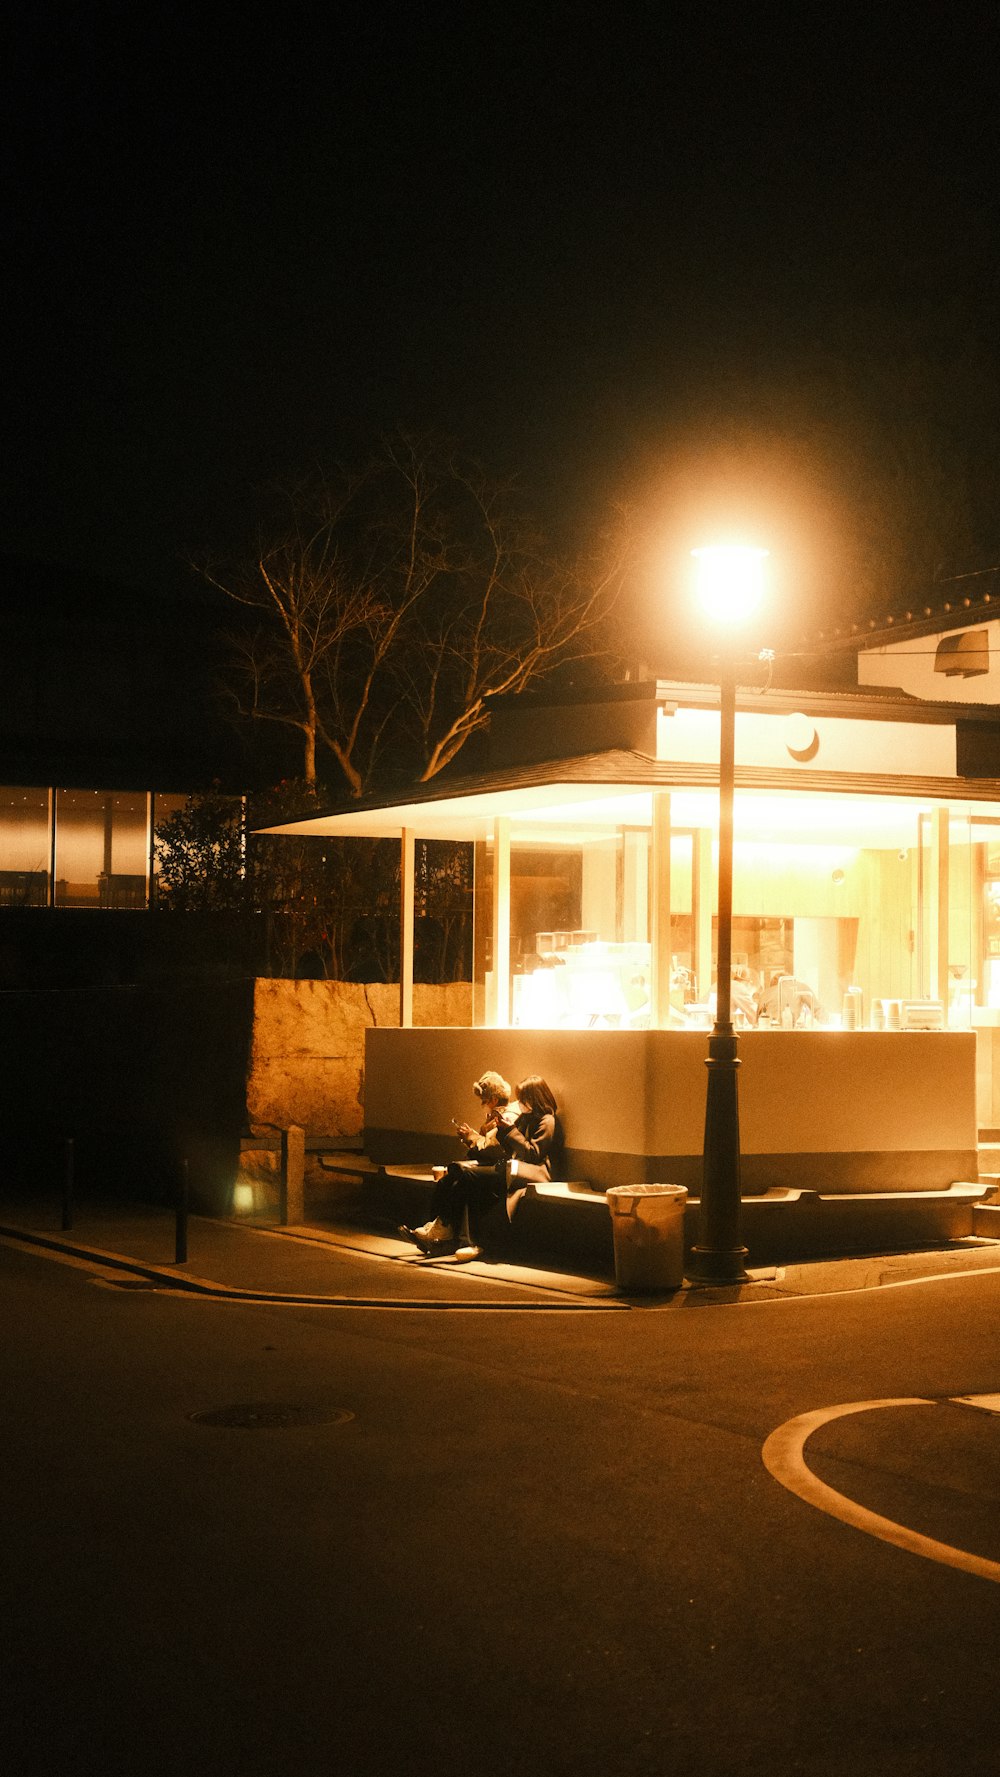 une personne assise sur un banc devant un immeuble la nuit